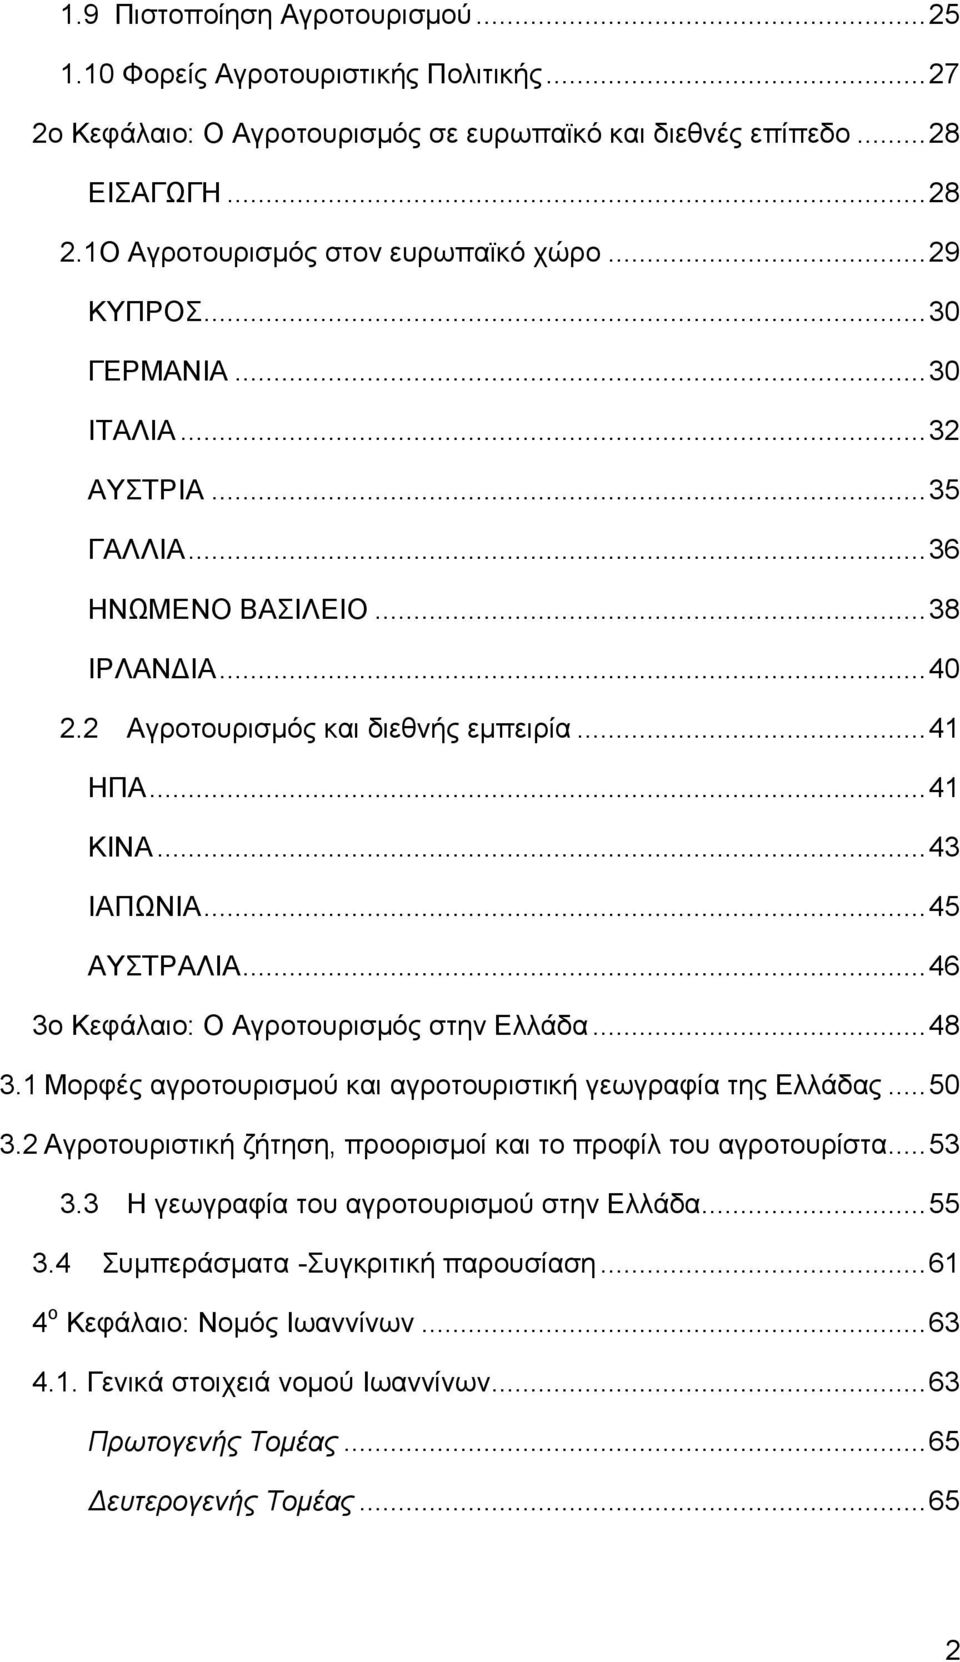 .. 41 ΚΙΝΑ... 43 ΙΑΠΩΝΙΑ... 45 ΑΥΣΤΡΑΛΙΑ... 46 3ο Κεφάλαιο: Ο Αγροτουρισμός στην Ελλάδα... 48 3.1 Μορφές αγροτουρισμού και αγροτουριστική γεωγραφία της Ελλάδας... 50 3.